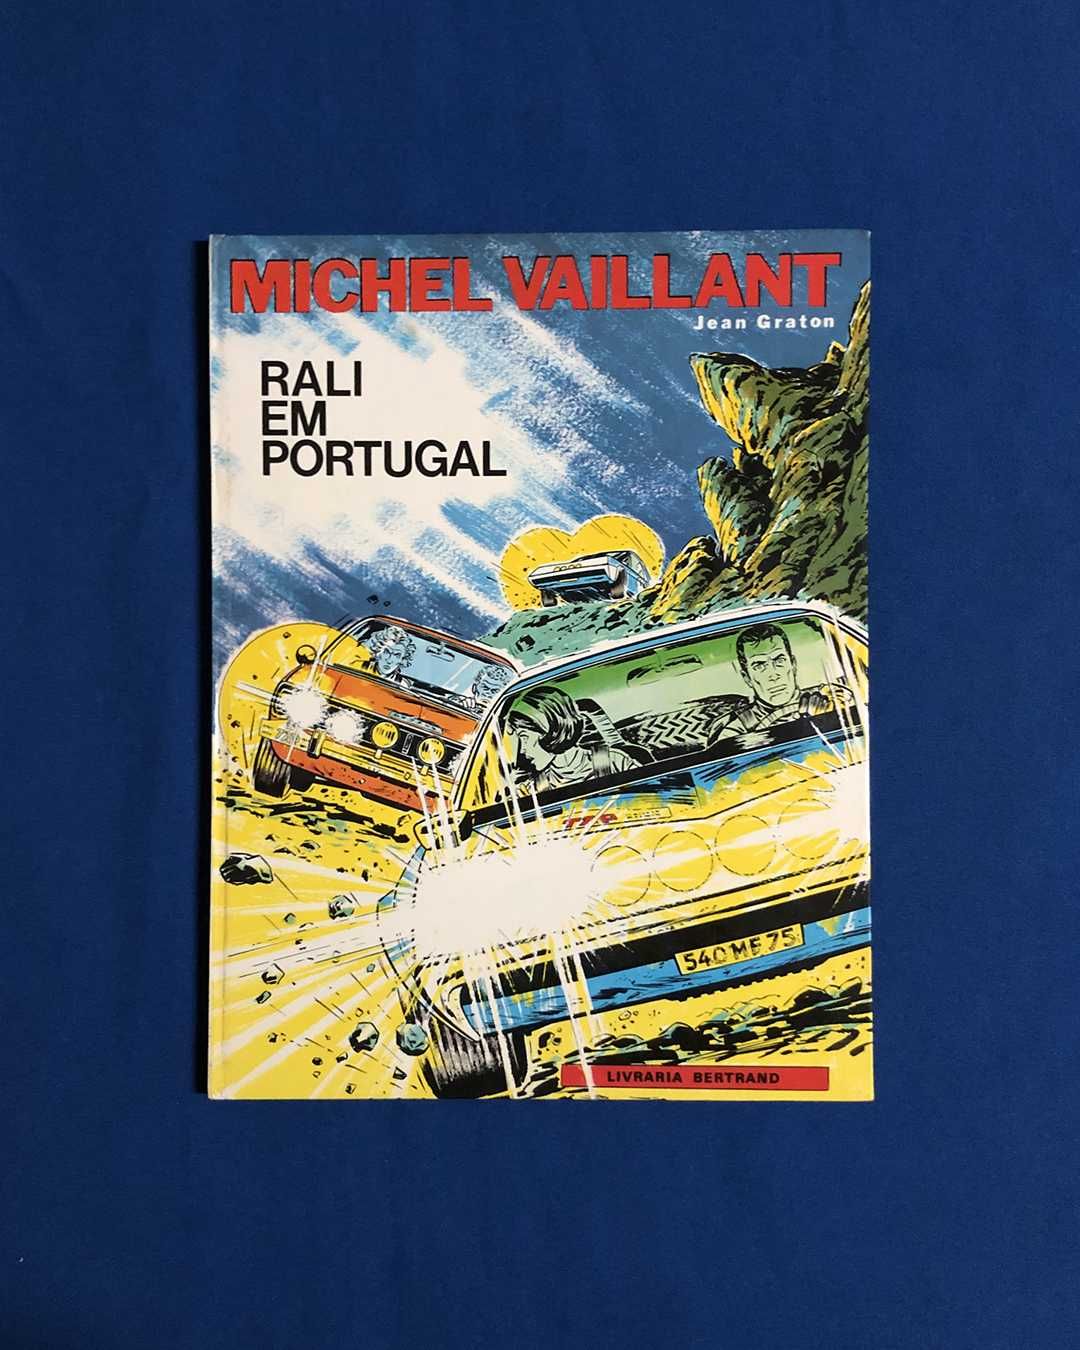 Michel Vaillant - RALI EM PORTUGAL - Capa dura - 1.ª edição portuguesa